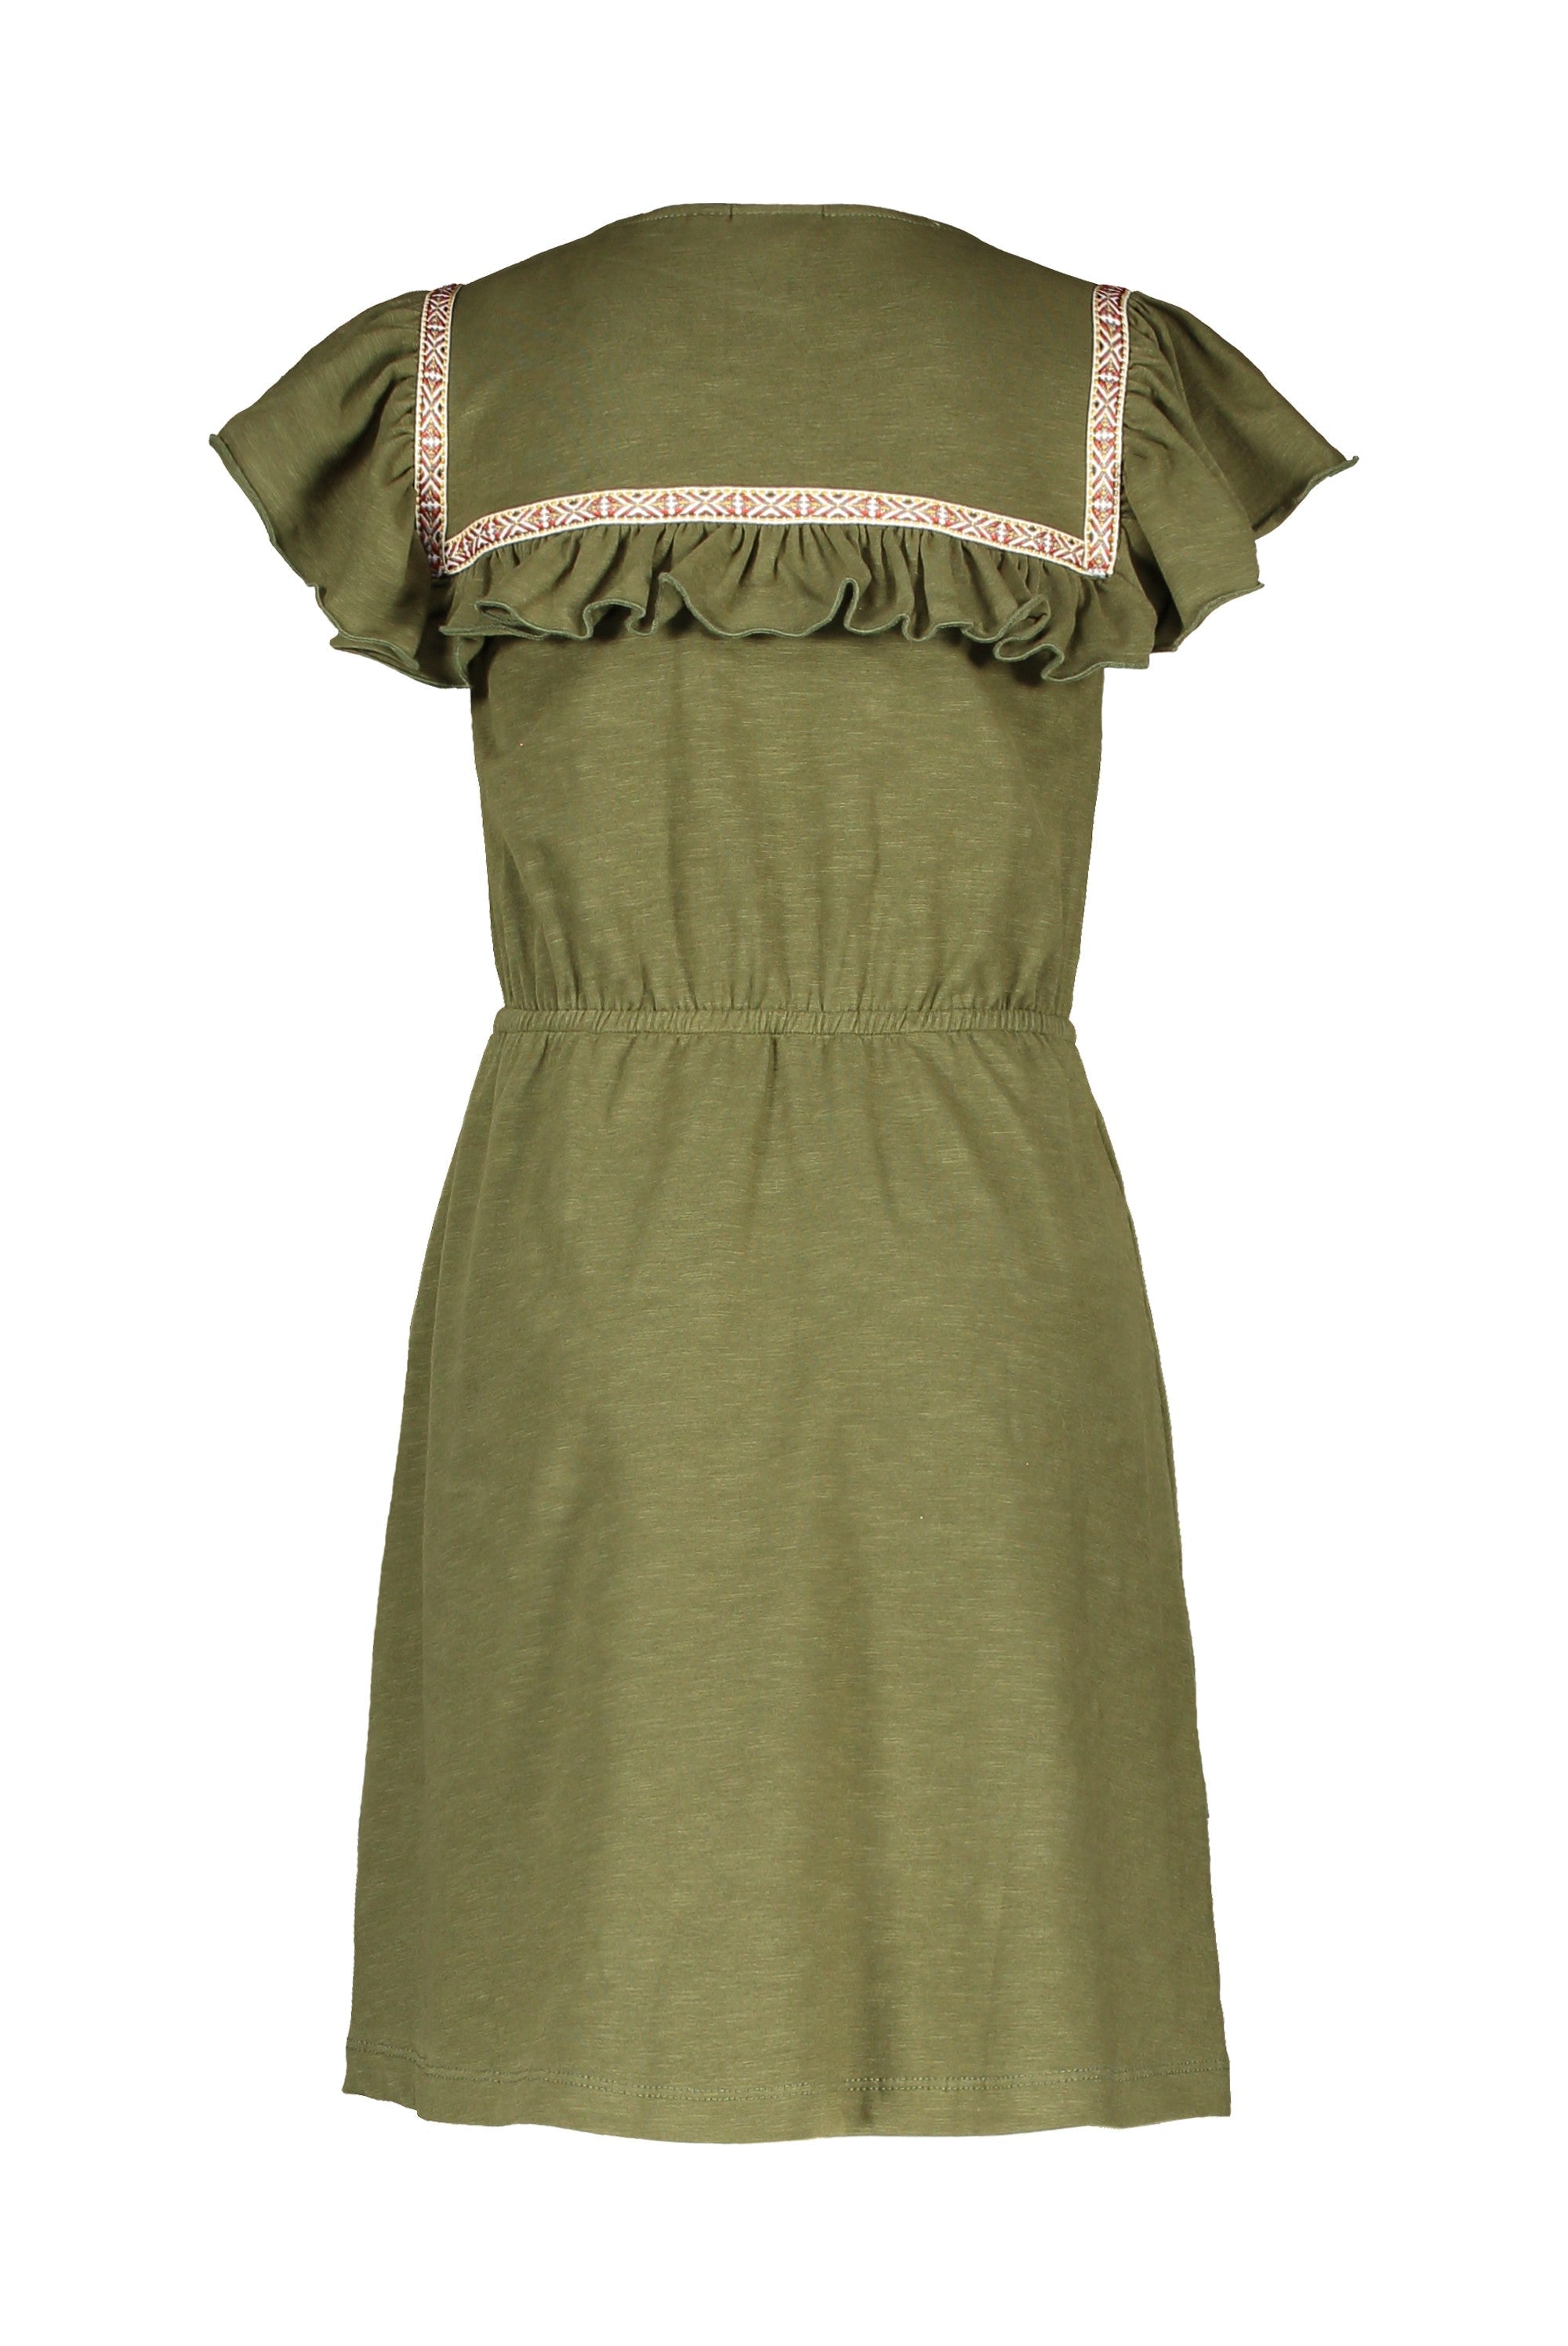 Meisjes Jersey Fancy Ruffle Dress van Like Flo in de kleur Olive in maat 152.